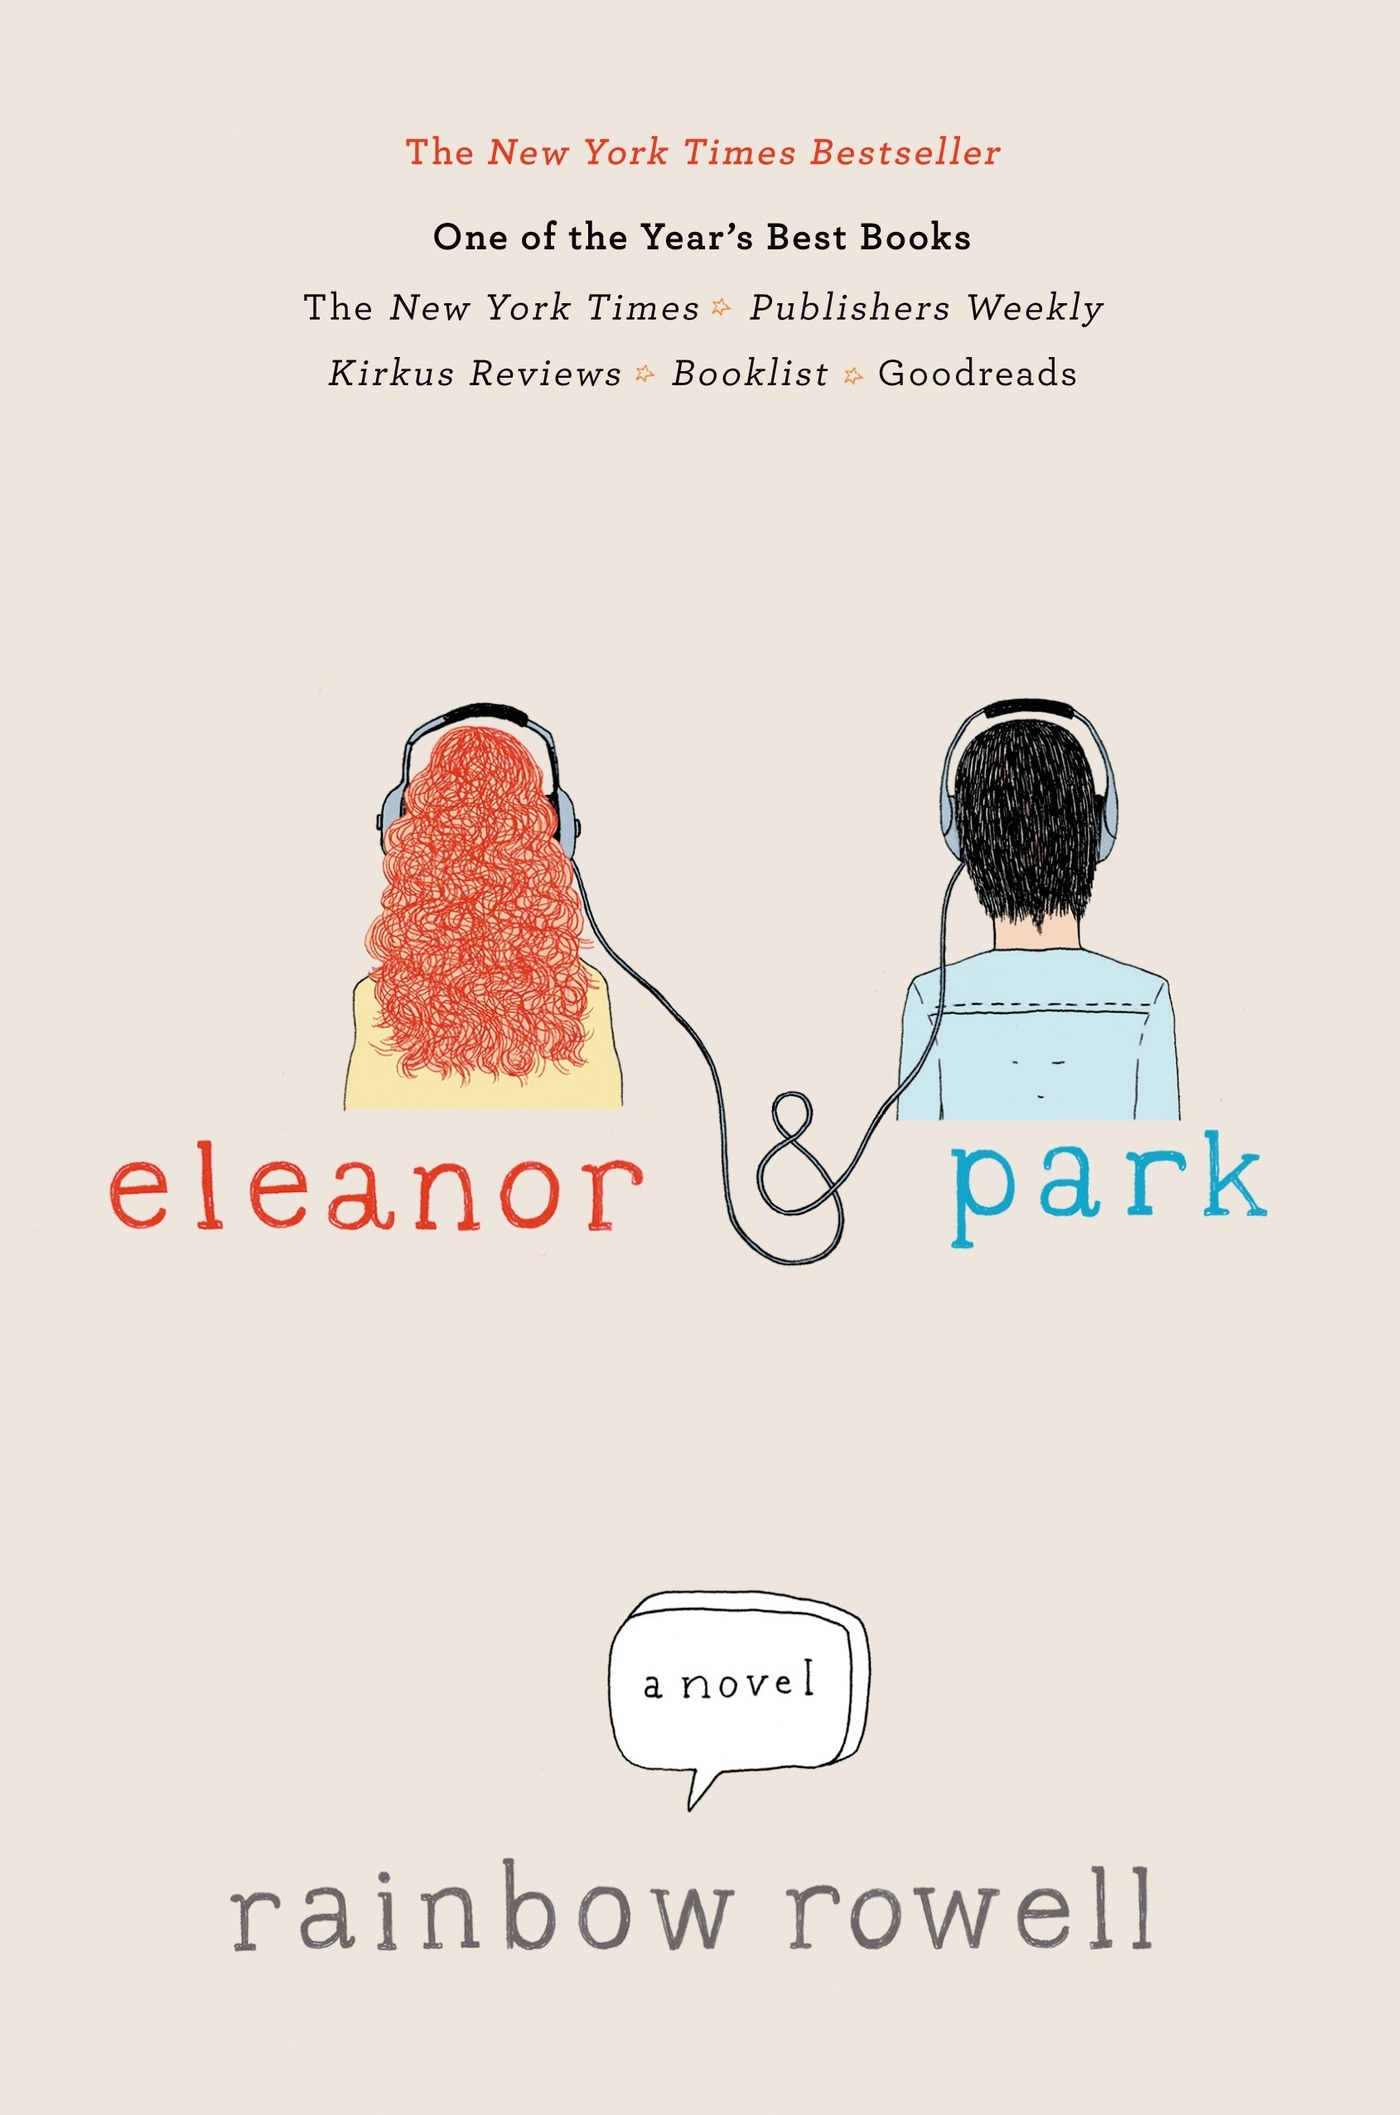 Book “Eleanor & Park” by Rainbow Rowell — February 26, 2013